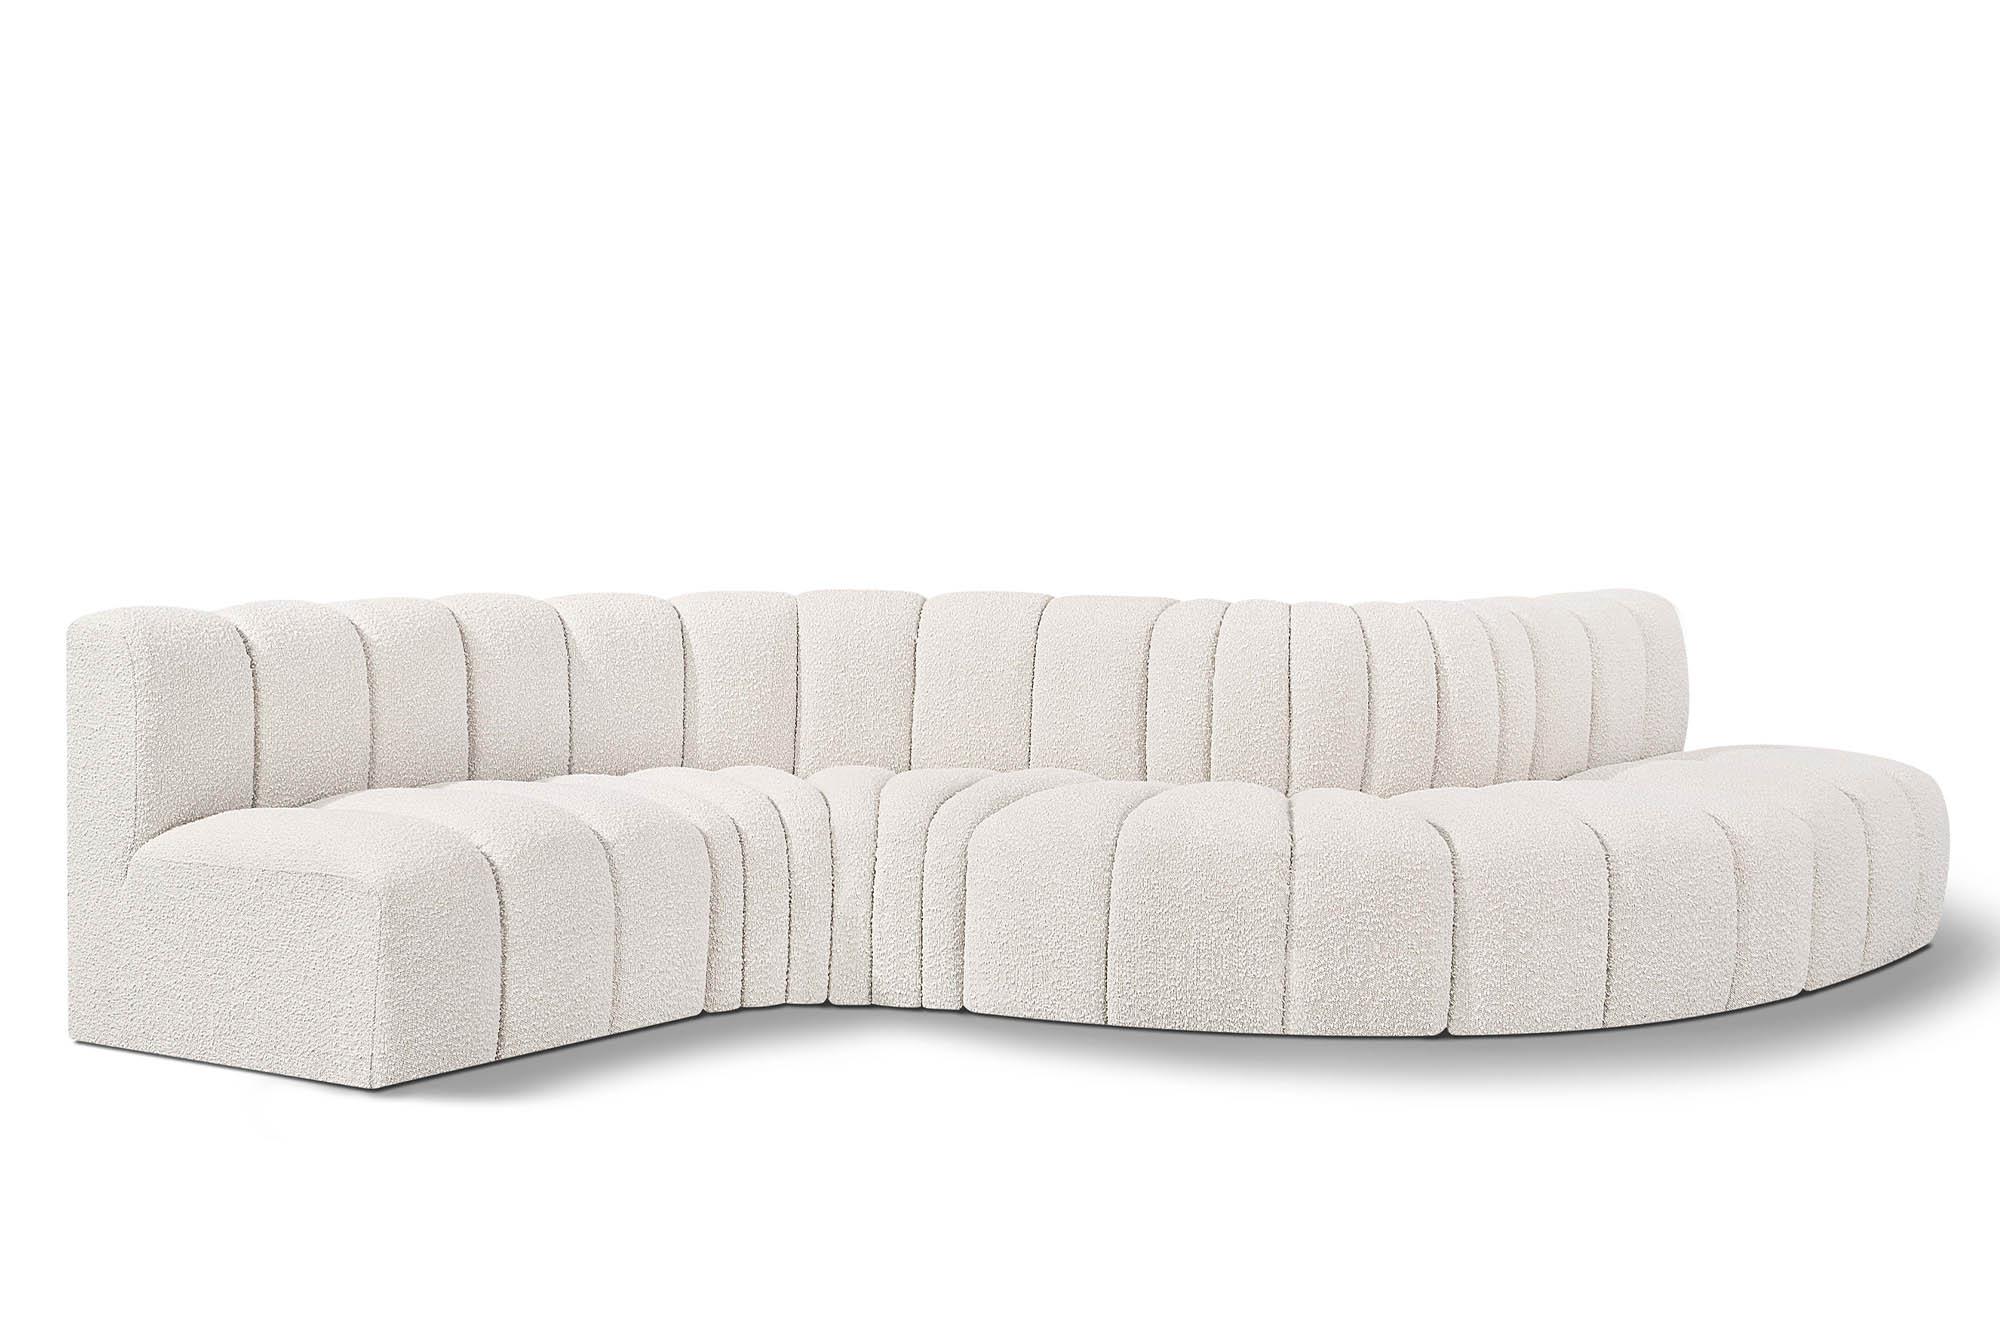 Contemporary, Modern Modular Sectional Sofa ARC 102Cream-S6A 102Cream-S6A in Cream 